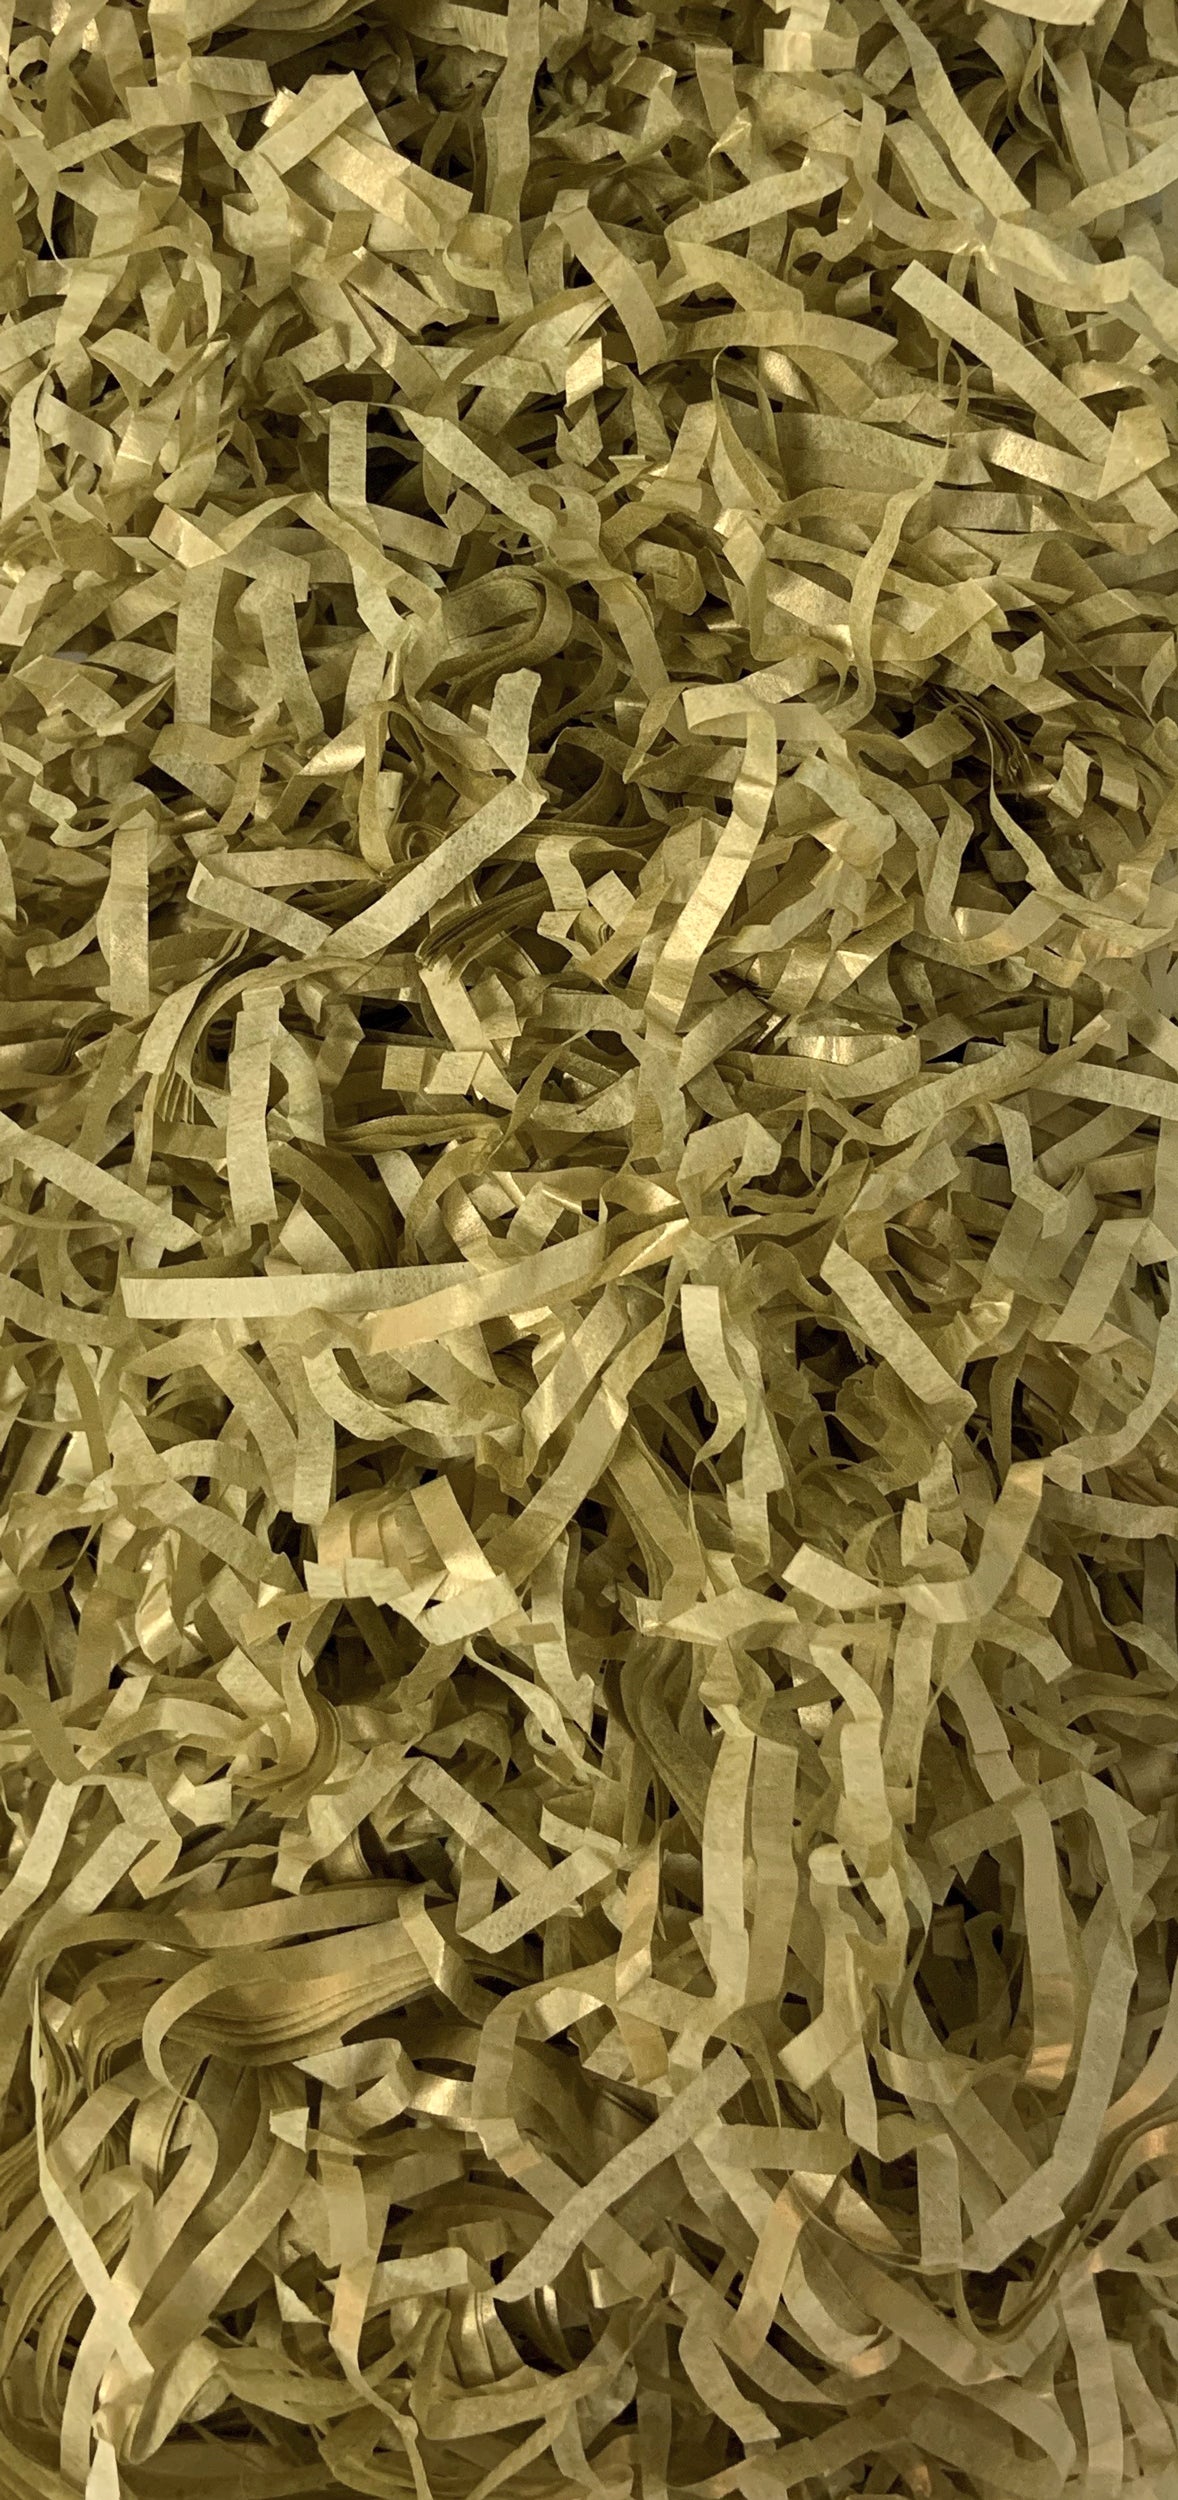 Shredded Tissue Pack - Gold (20g)